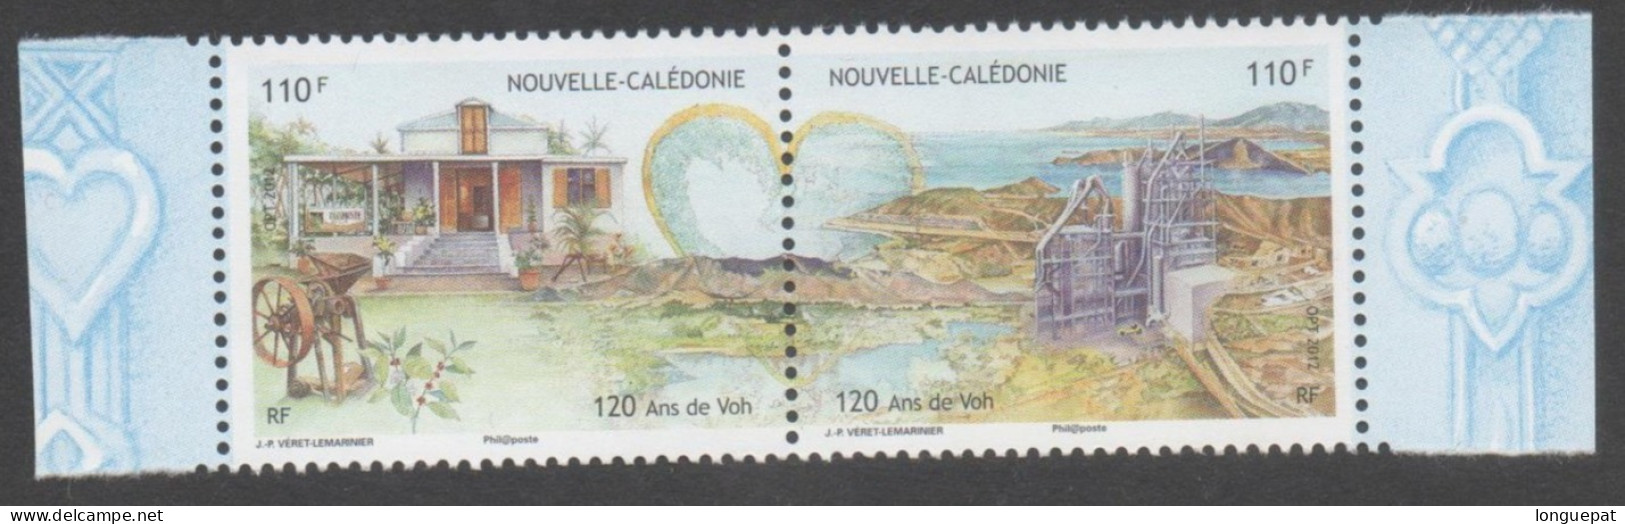 Nelle CALEDONIE - Ville De VOH : 120 Ans De La Ville - Maison, Usine Et Paysage - Nickel - - Unused Stamps